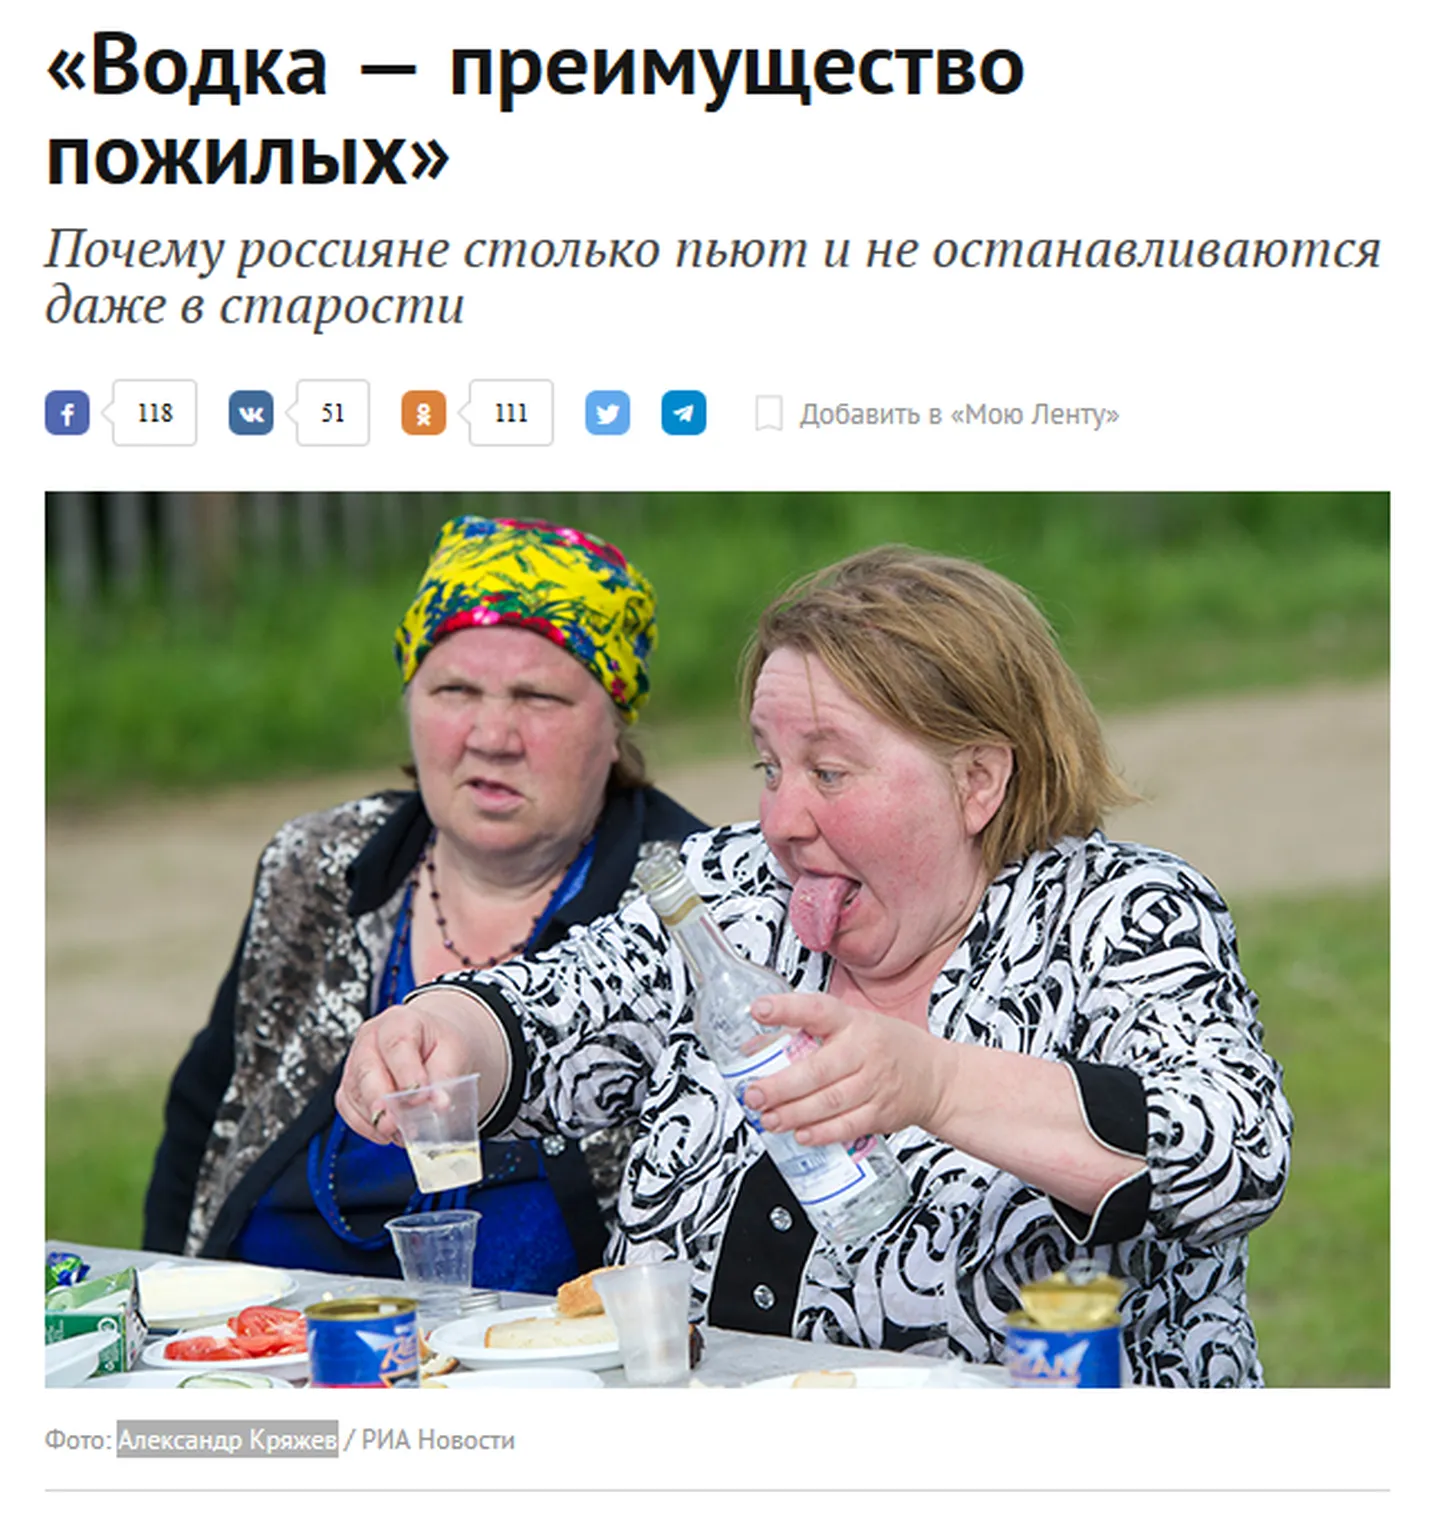 Lenta.ru lugu «Viin on vanemate eelis».